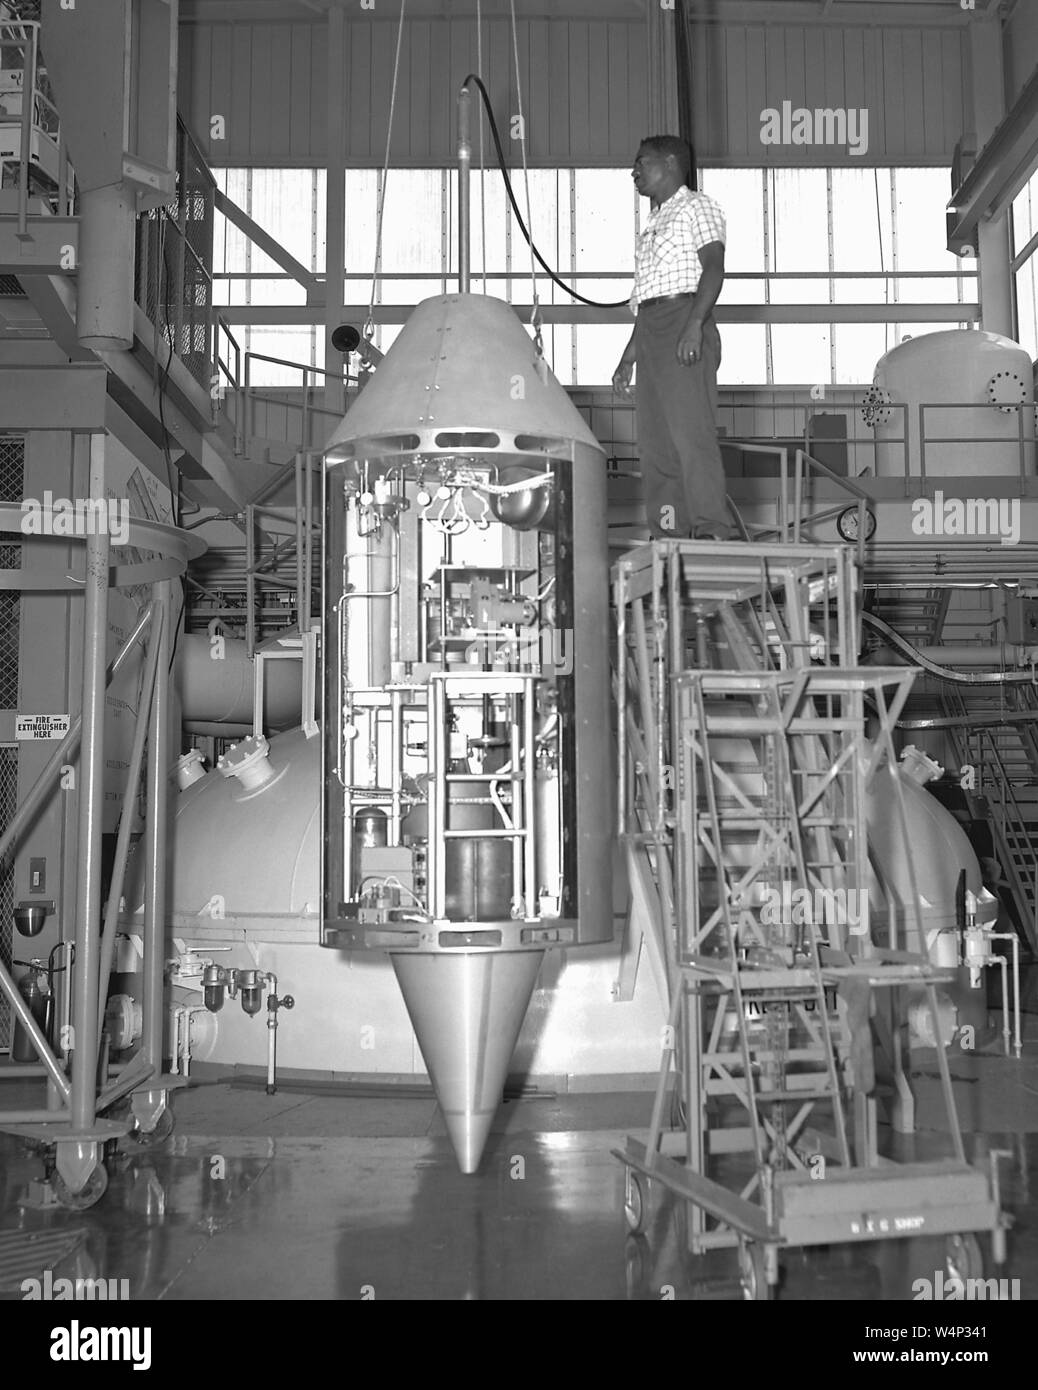 Il payload Zero-Gravity costruzione presso lo spazio laboratorio esperimenti al Lewis Research Center, Cleveland, Ohio, 2 agosto 1967. Immagine cortesia Nazionale Aeronautica e Spaziale Administration (NASA). () Foto Stock